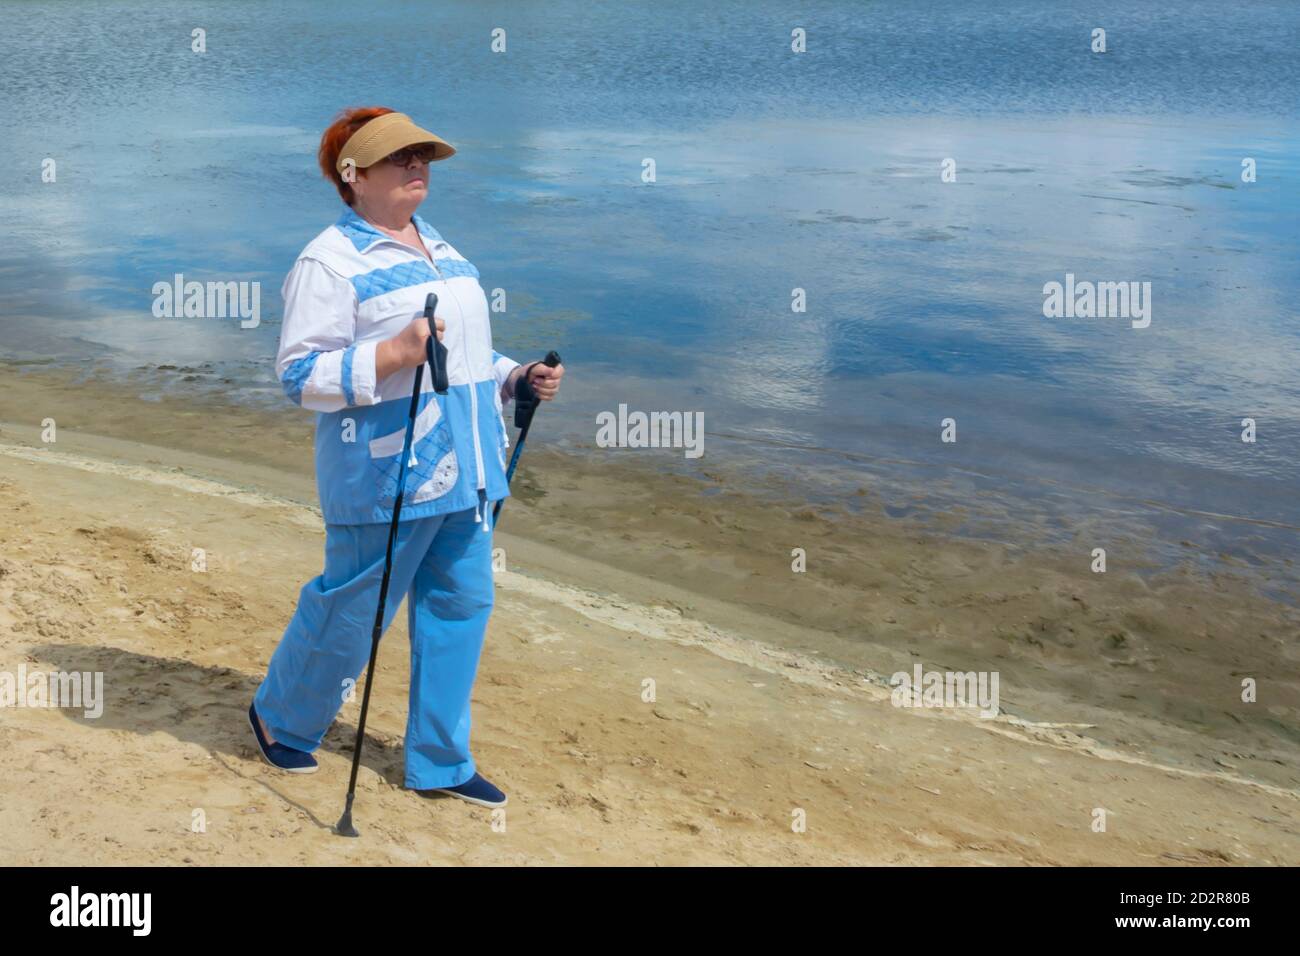 Una donna anziana si allena nel nordic walking con bastoni. Prendersi cura della salute e di uno stile di vita attivo nella vecchiaia. Messa a fuoco morbida, sfocatura. Foto Stock